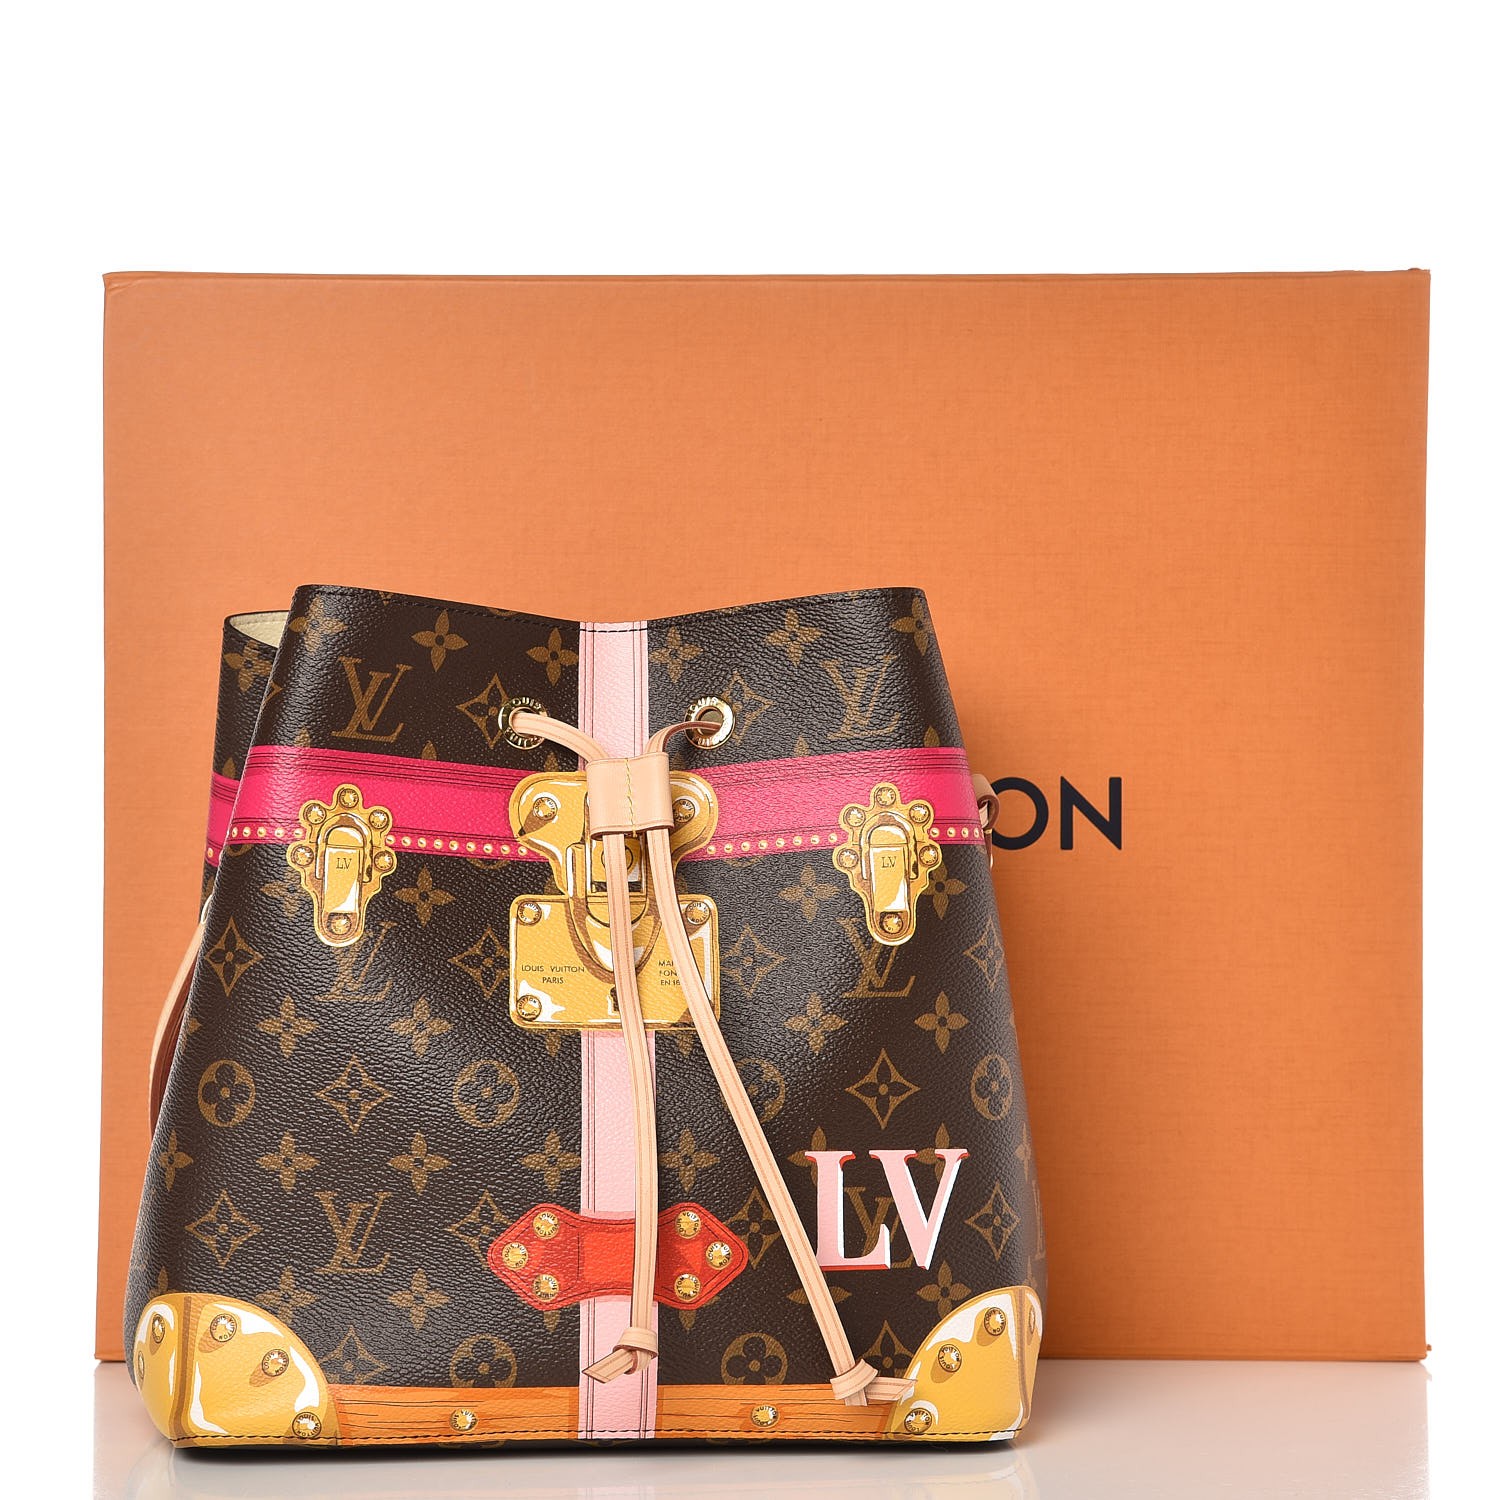 Louis Vuitton Escale Summer 2020 Unboxing NEONOE + Mini Pochette